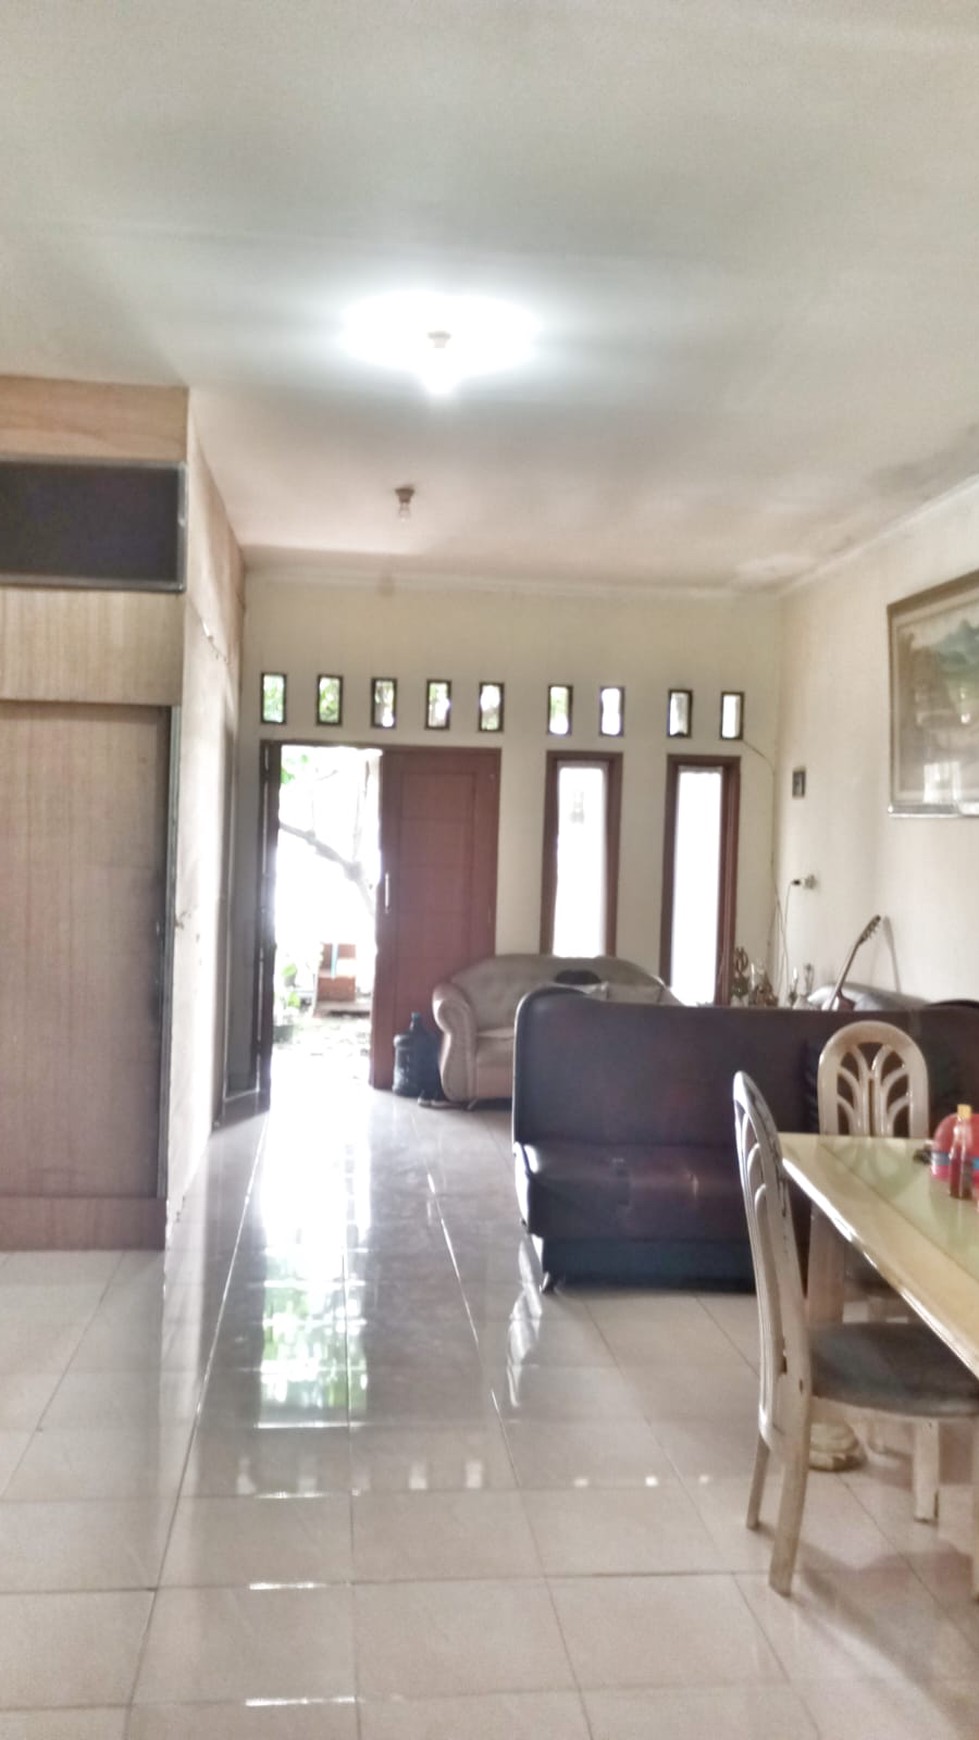 Rumah Asri Pinggir Jalan Dekat ke Stasiun Pondok Ranji #DGLS